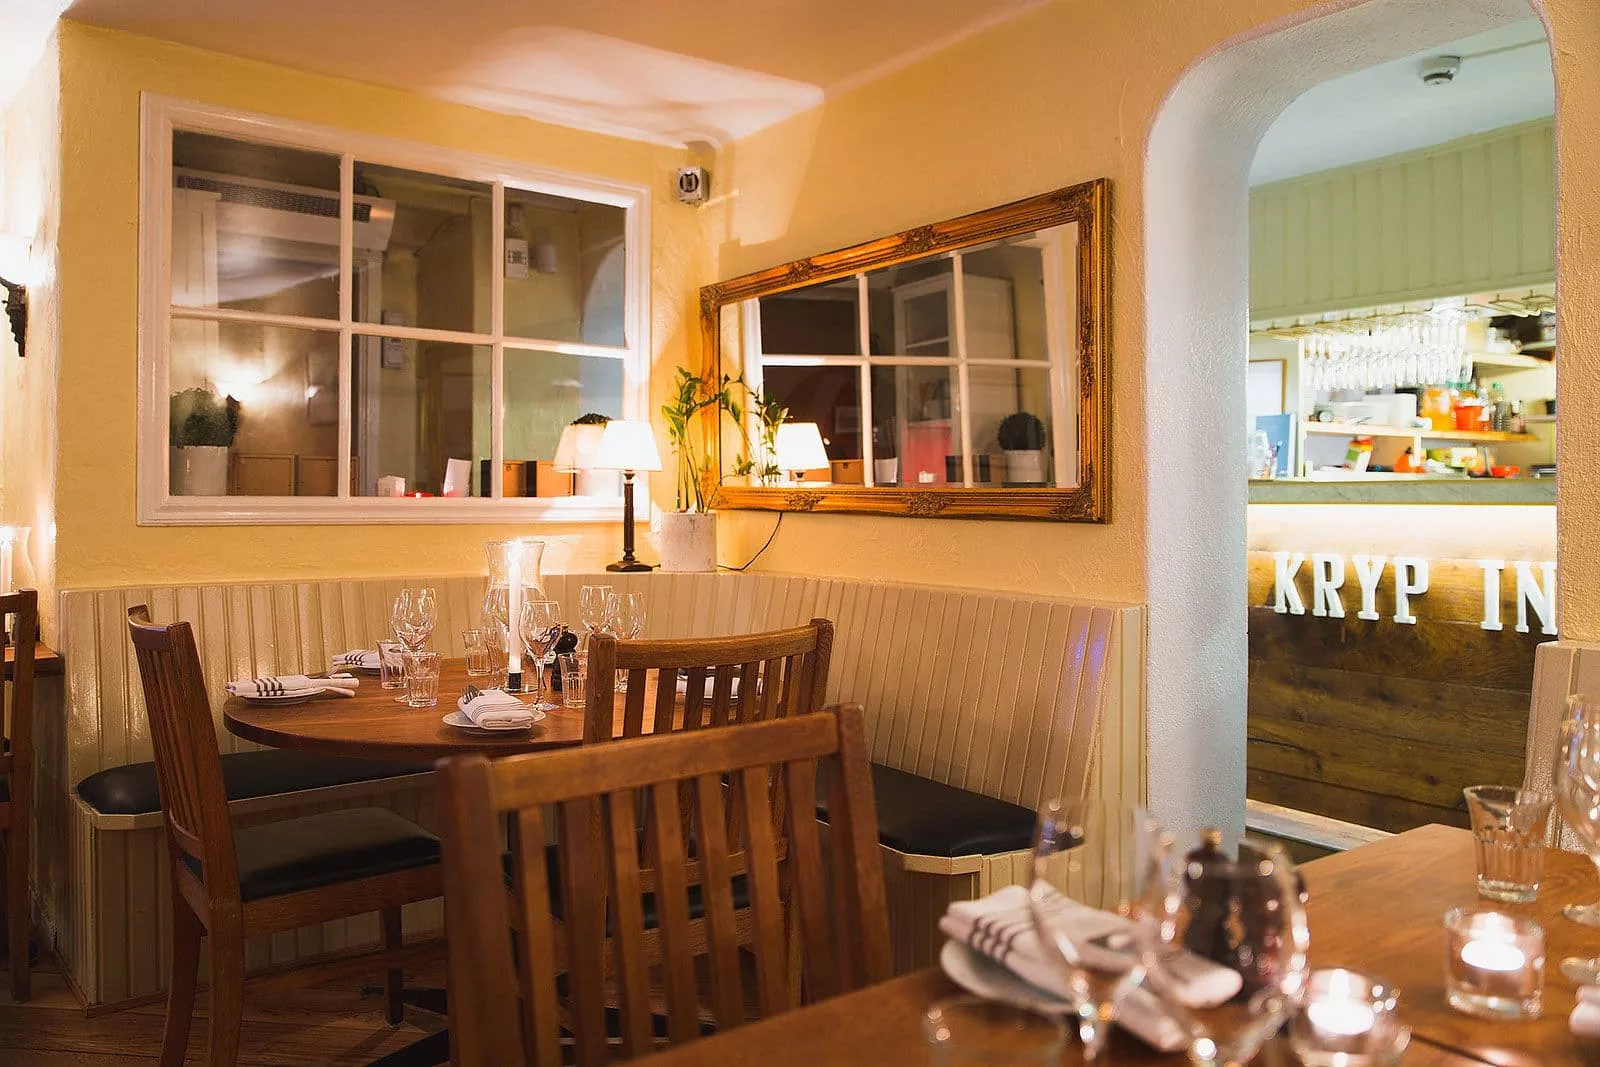 Restaurang Kryp In in Sweden, Europe | Restaurants - Rated 3.7